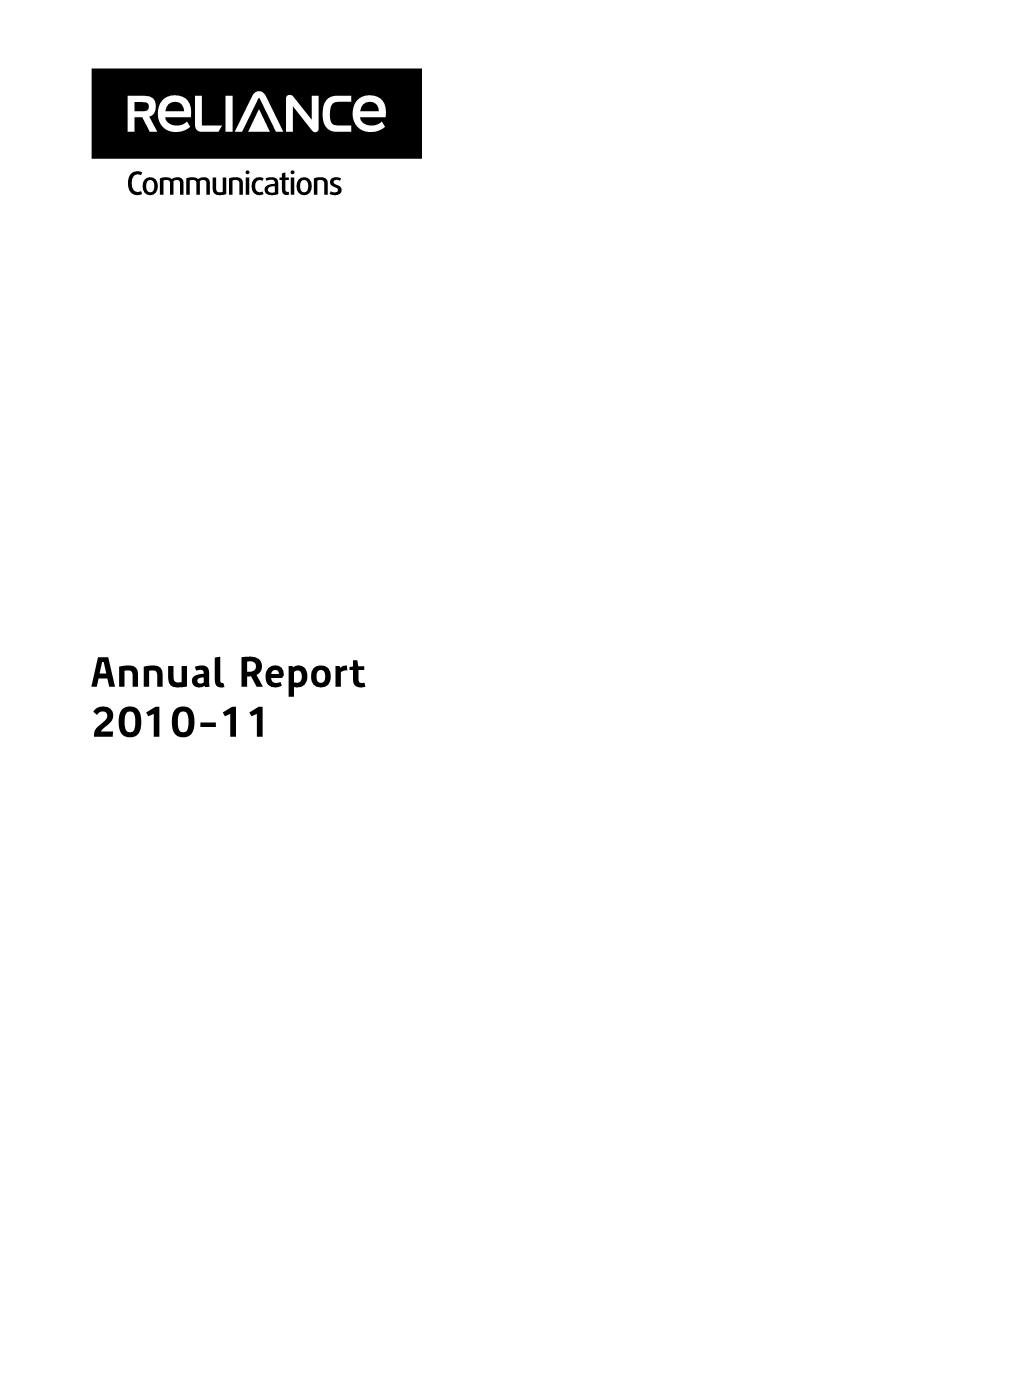 Annual Report 2010-11 Dhirubhai H